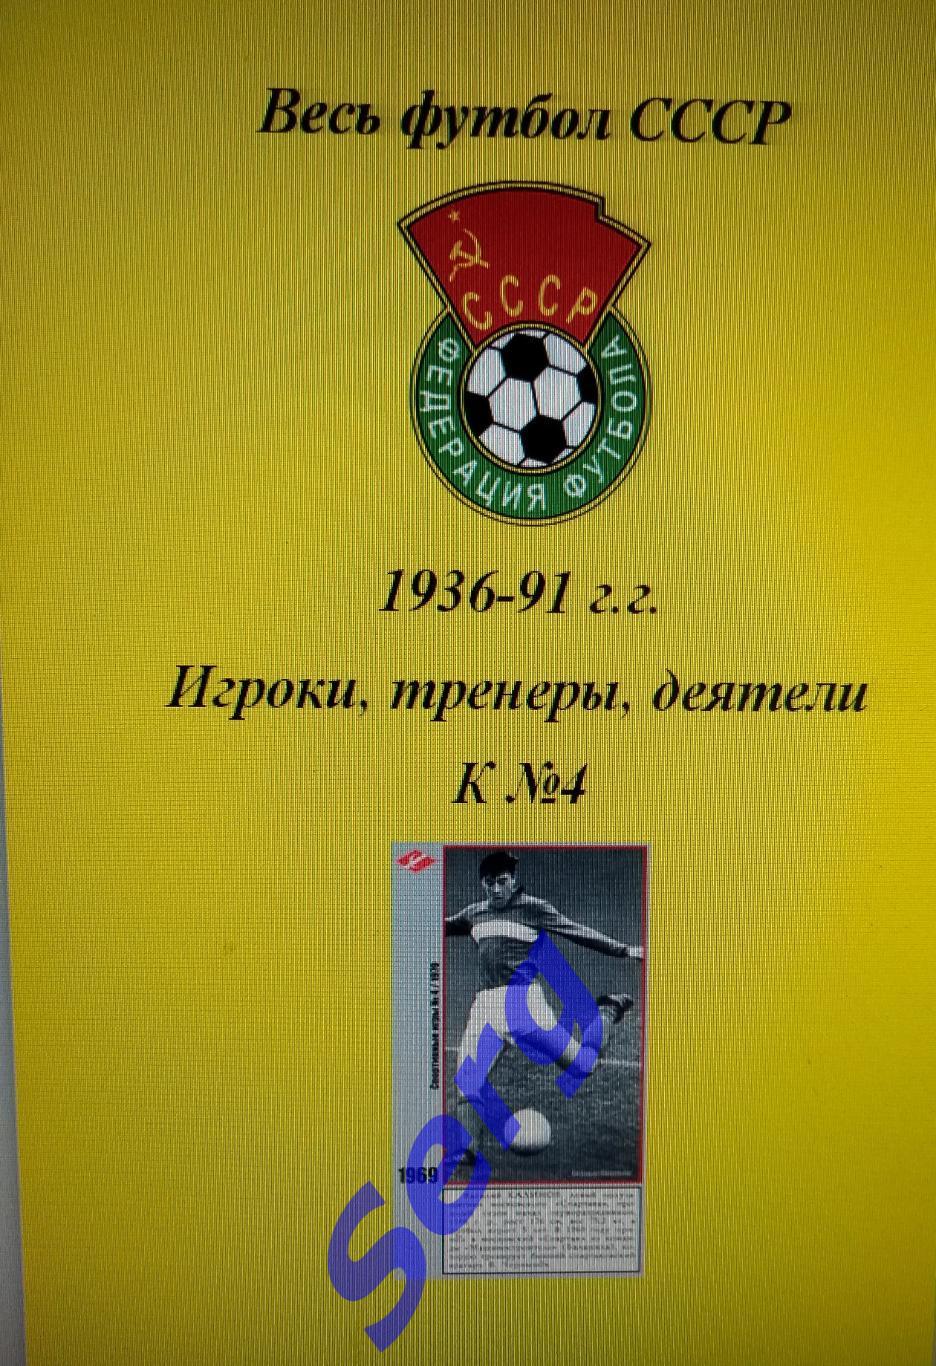 Весь футбол СССР. 1936-1991 г.г. Игроки, тренеры, деятели на букву К №4